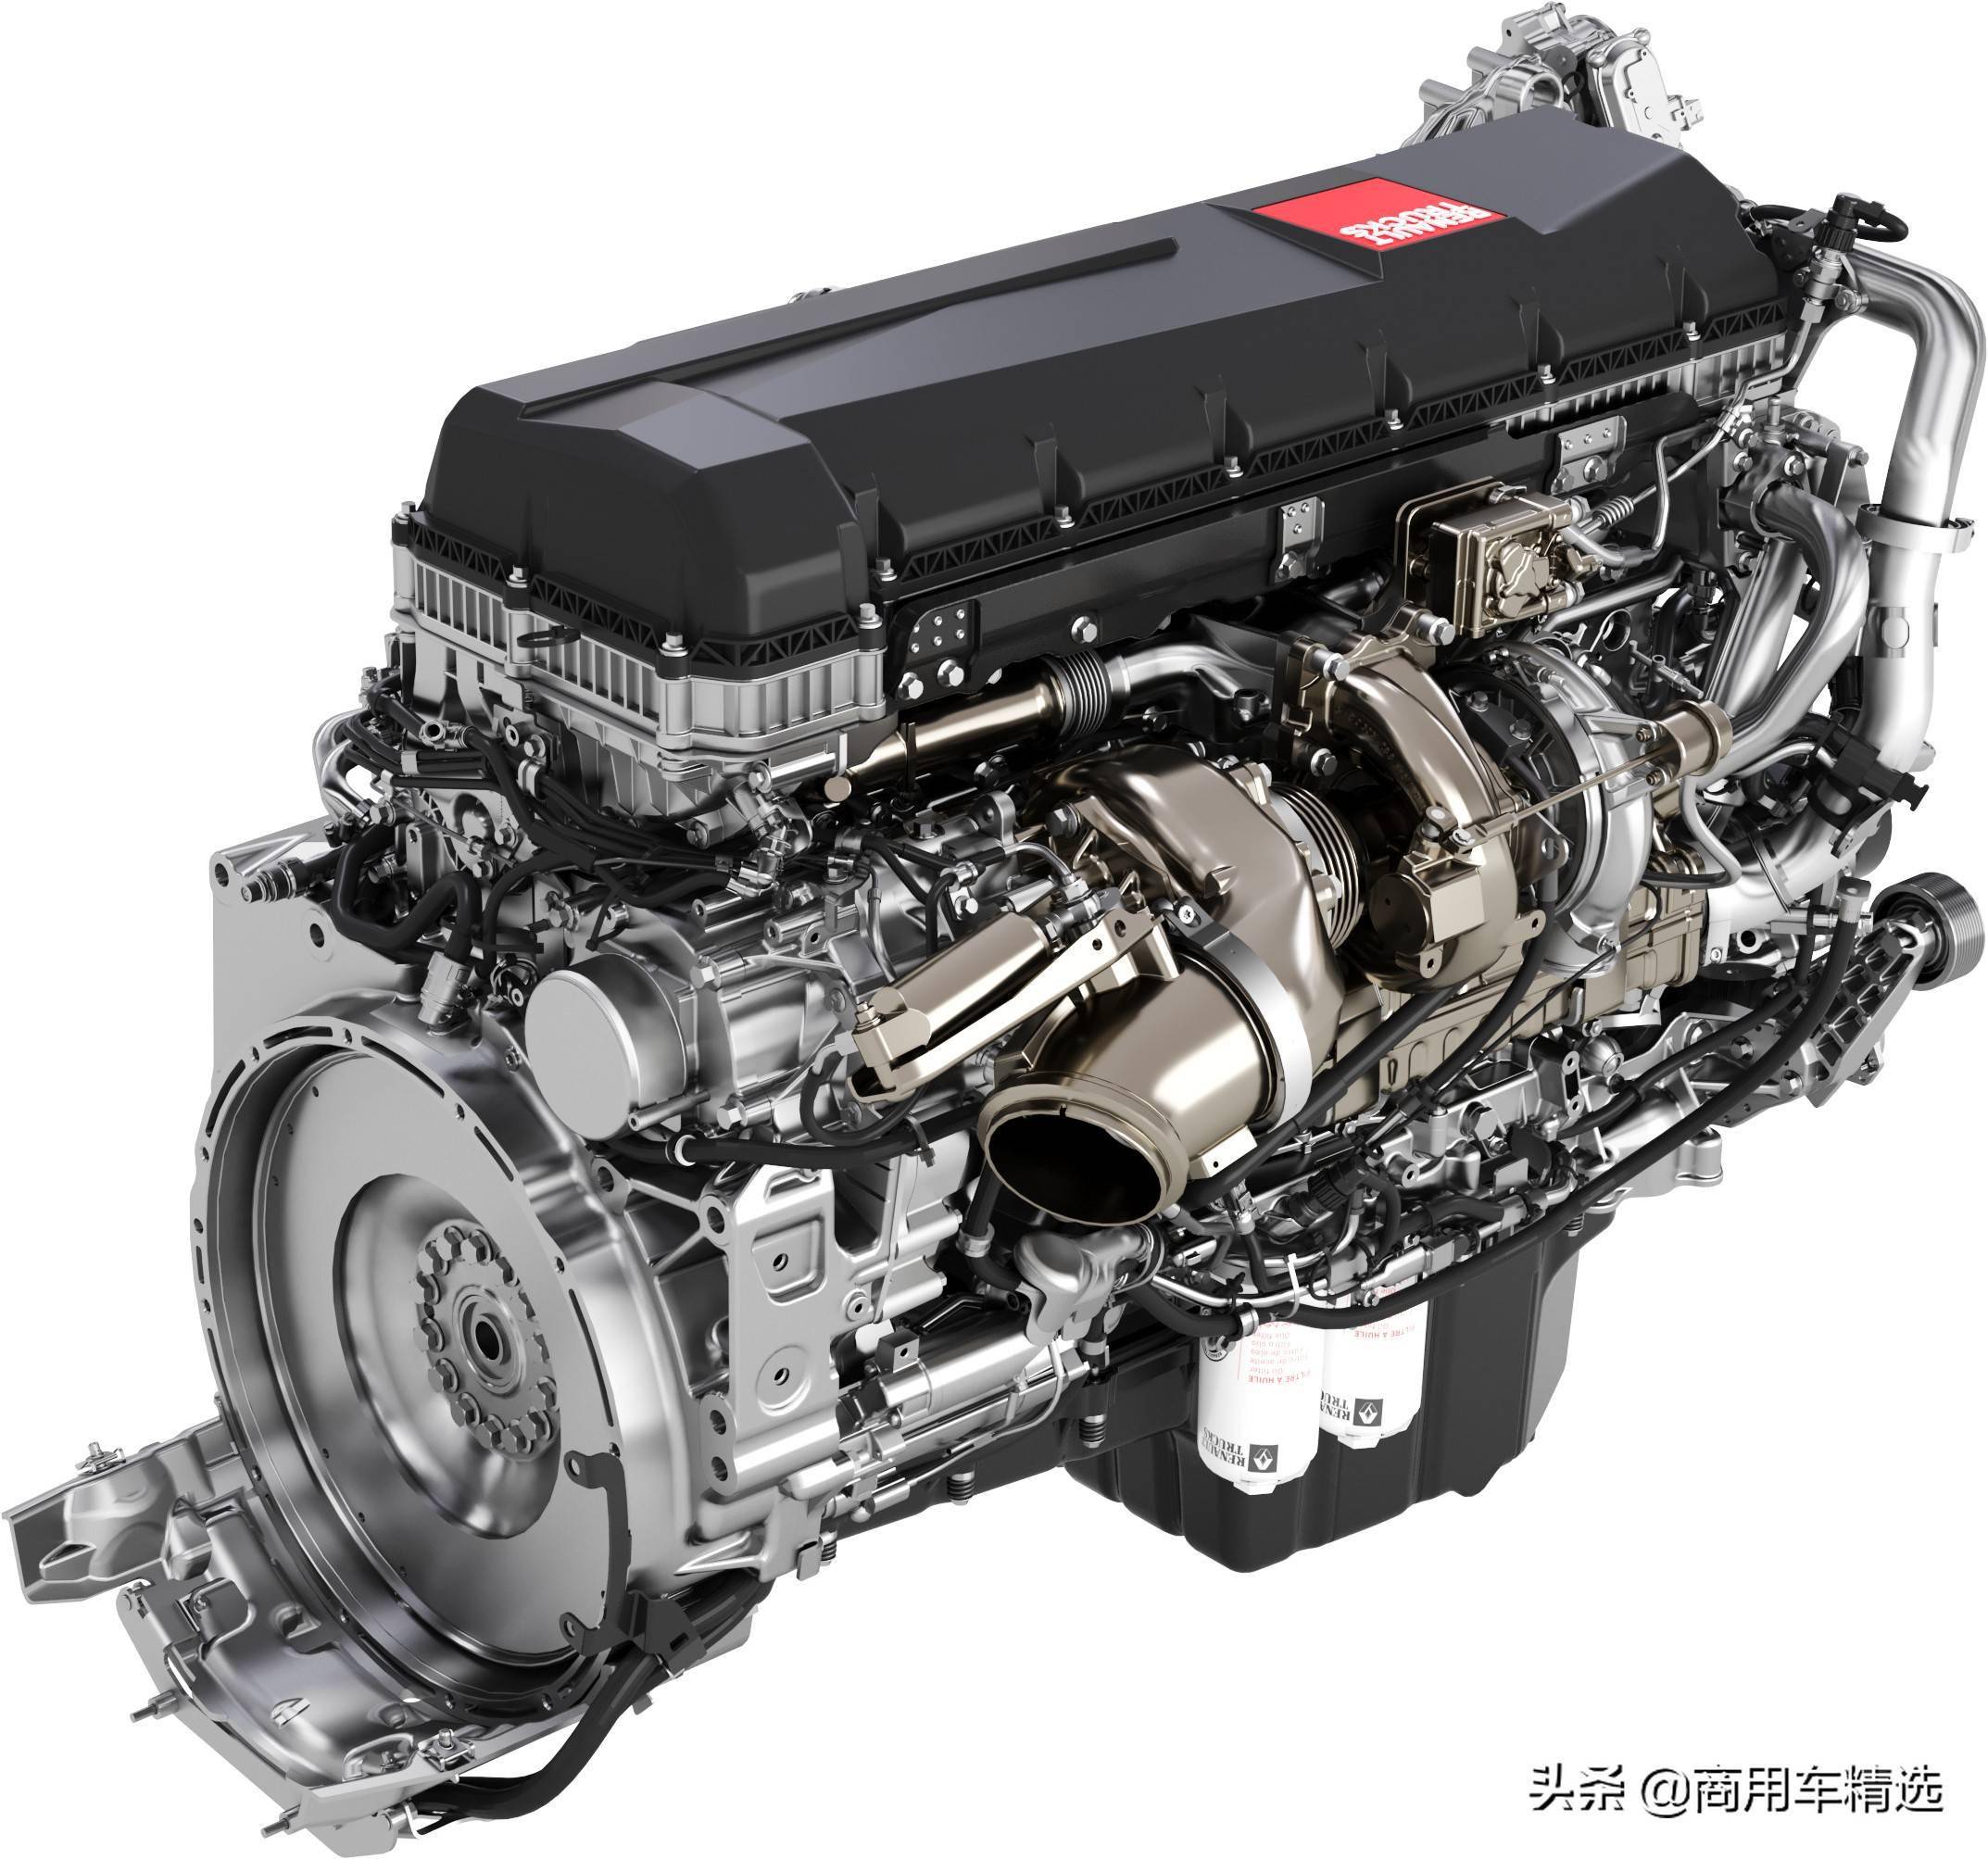 沃尔沃同款涡轮复合柴油机 雷诺卡车推出新款de11和de13发动机